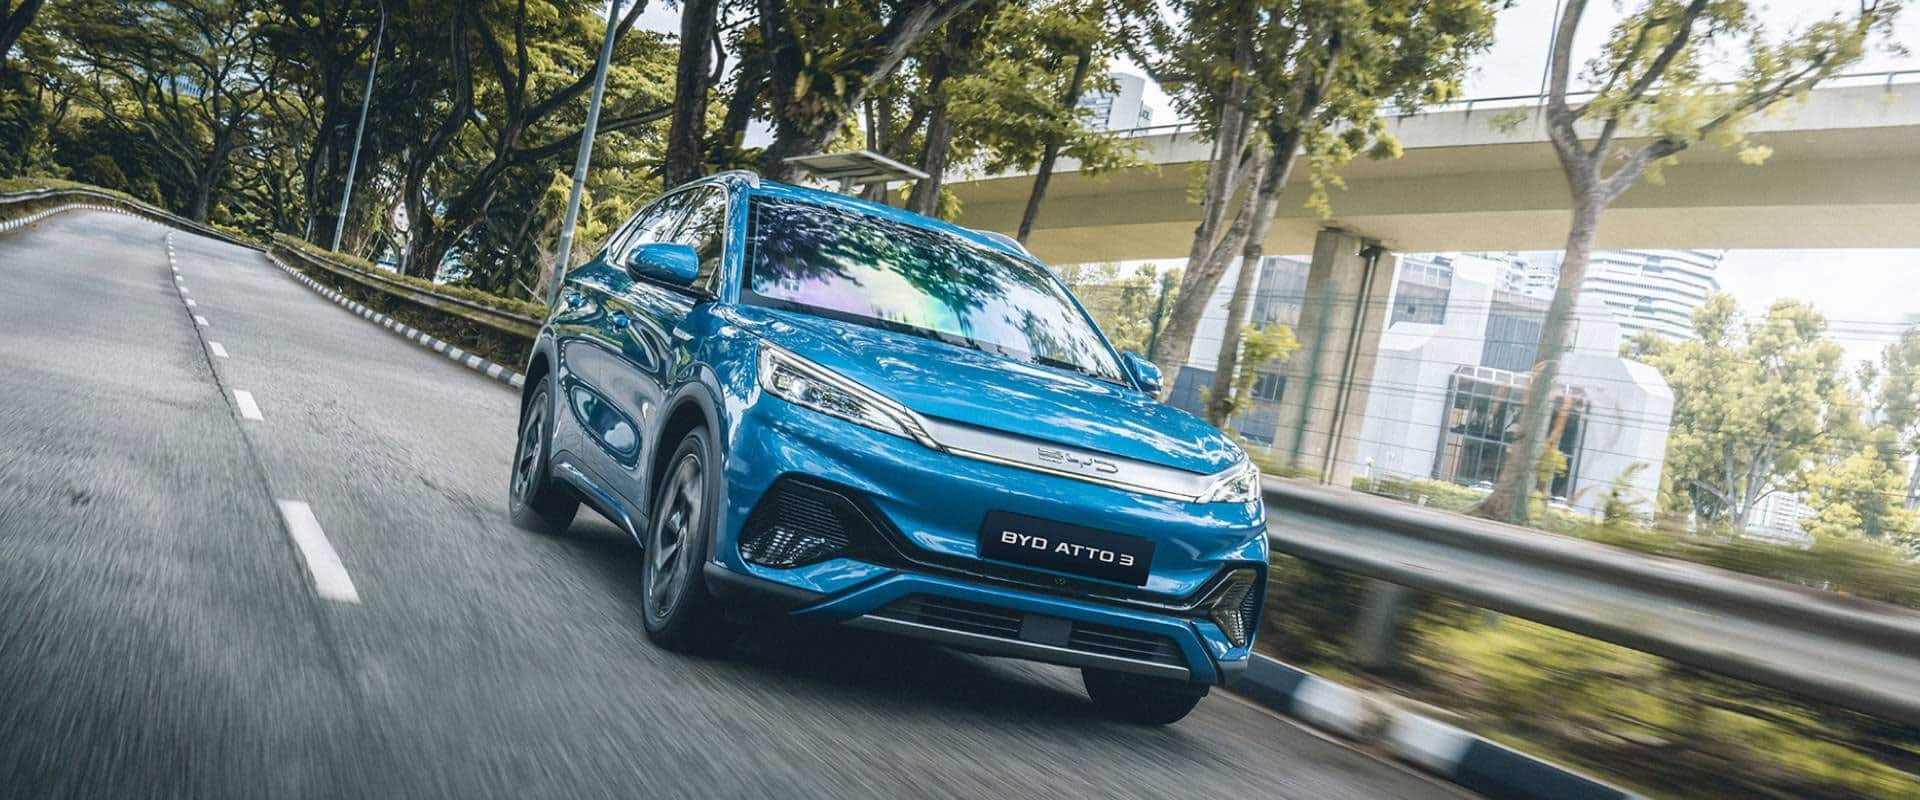 'Siêu phẩm' SUV điện chuẩn bị về Việt Nam đang khuấy đảo hàng loạt thị trường: bán 200 chiếc/ngày tại Ấn Độ, vô địch doanh số 6 tháng liên tiếp tại Thái Lan - Ảnh 2.